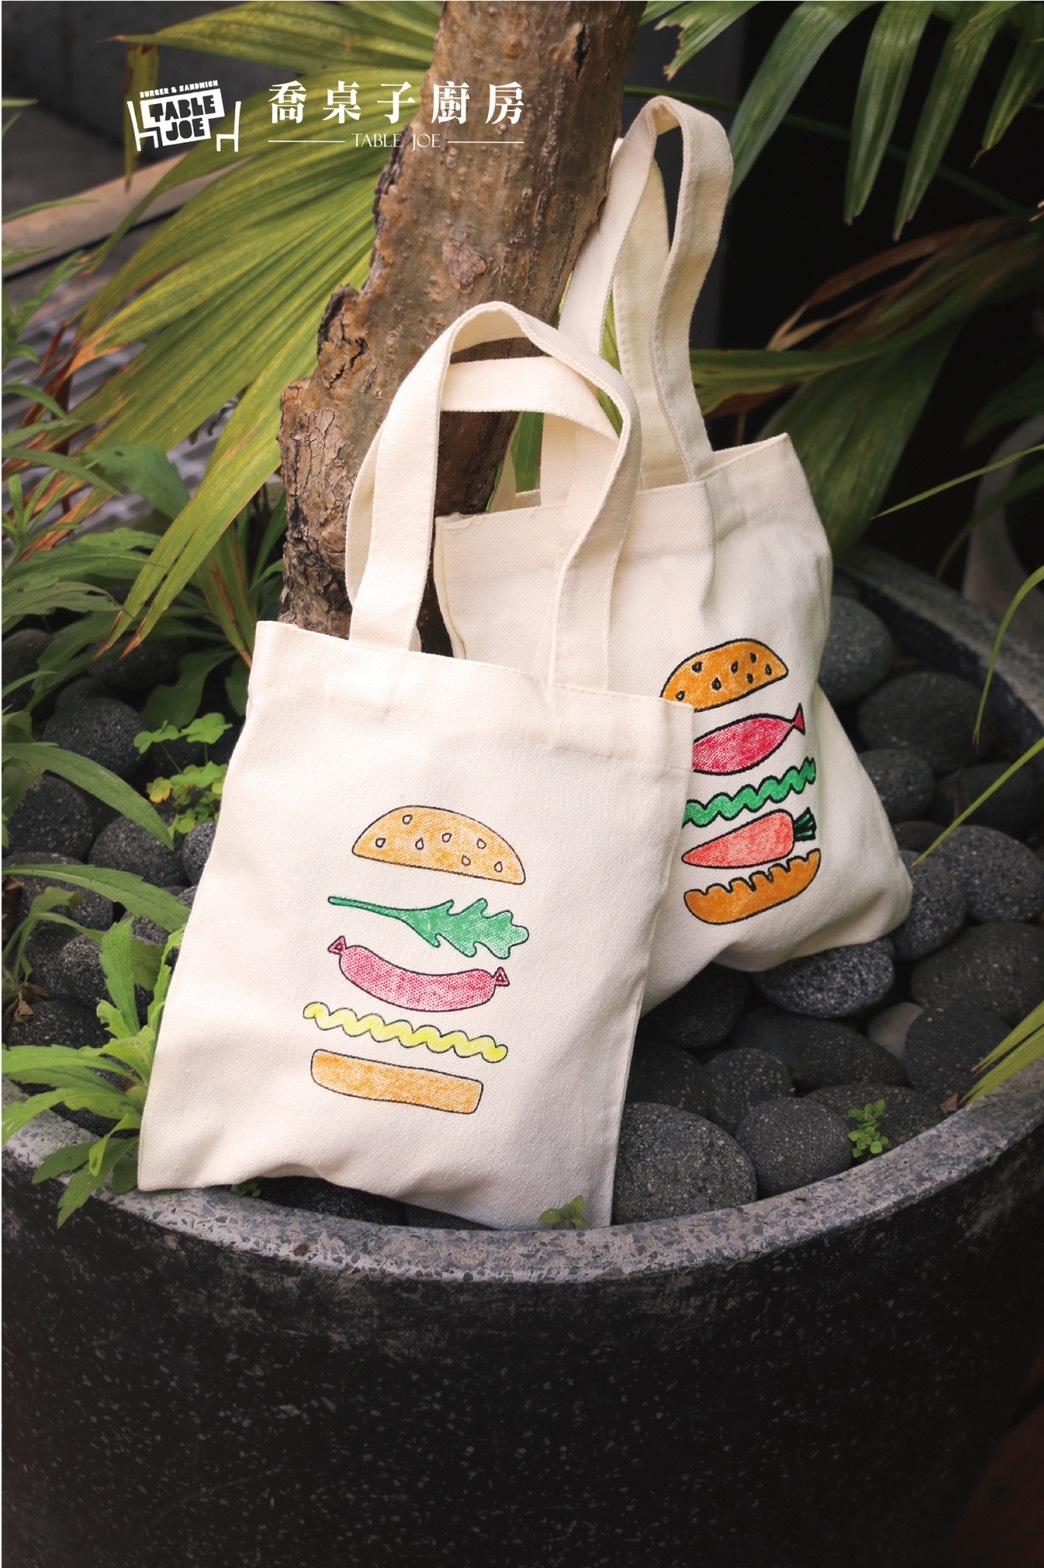 兒藝節友善店家美式餐廳「喬桌子」推出優惠，消費可加購環保提袋與蠟筆。